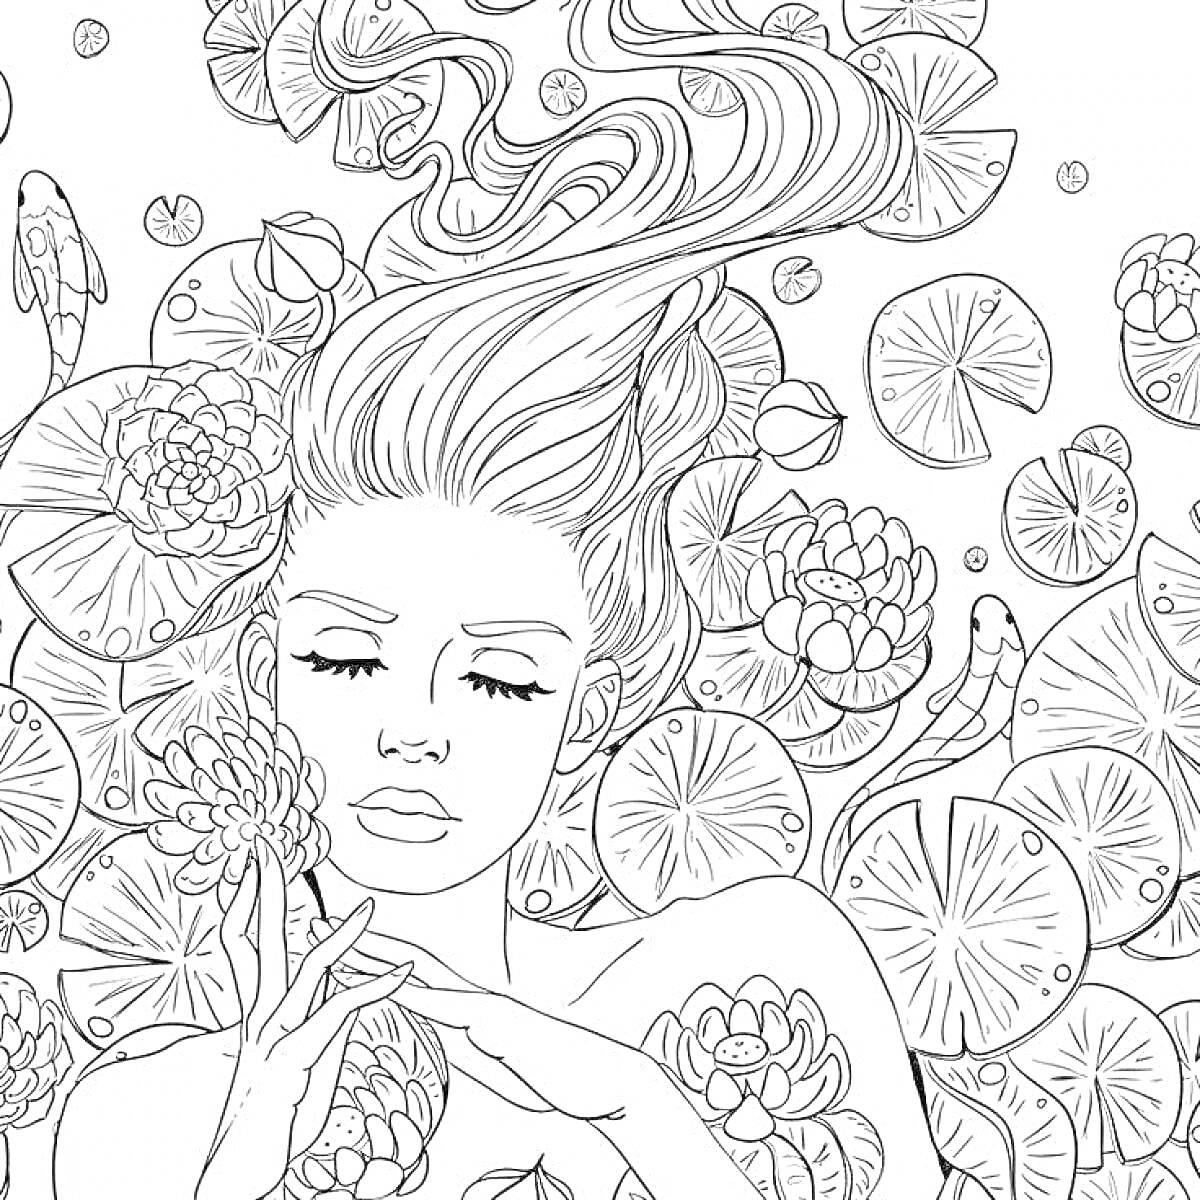 Раскраска Портрет женщины с распущенными волосами среди водяных лилий и листьев лотоса